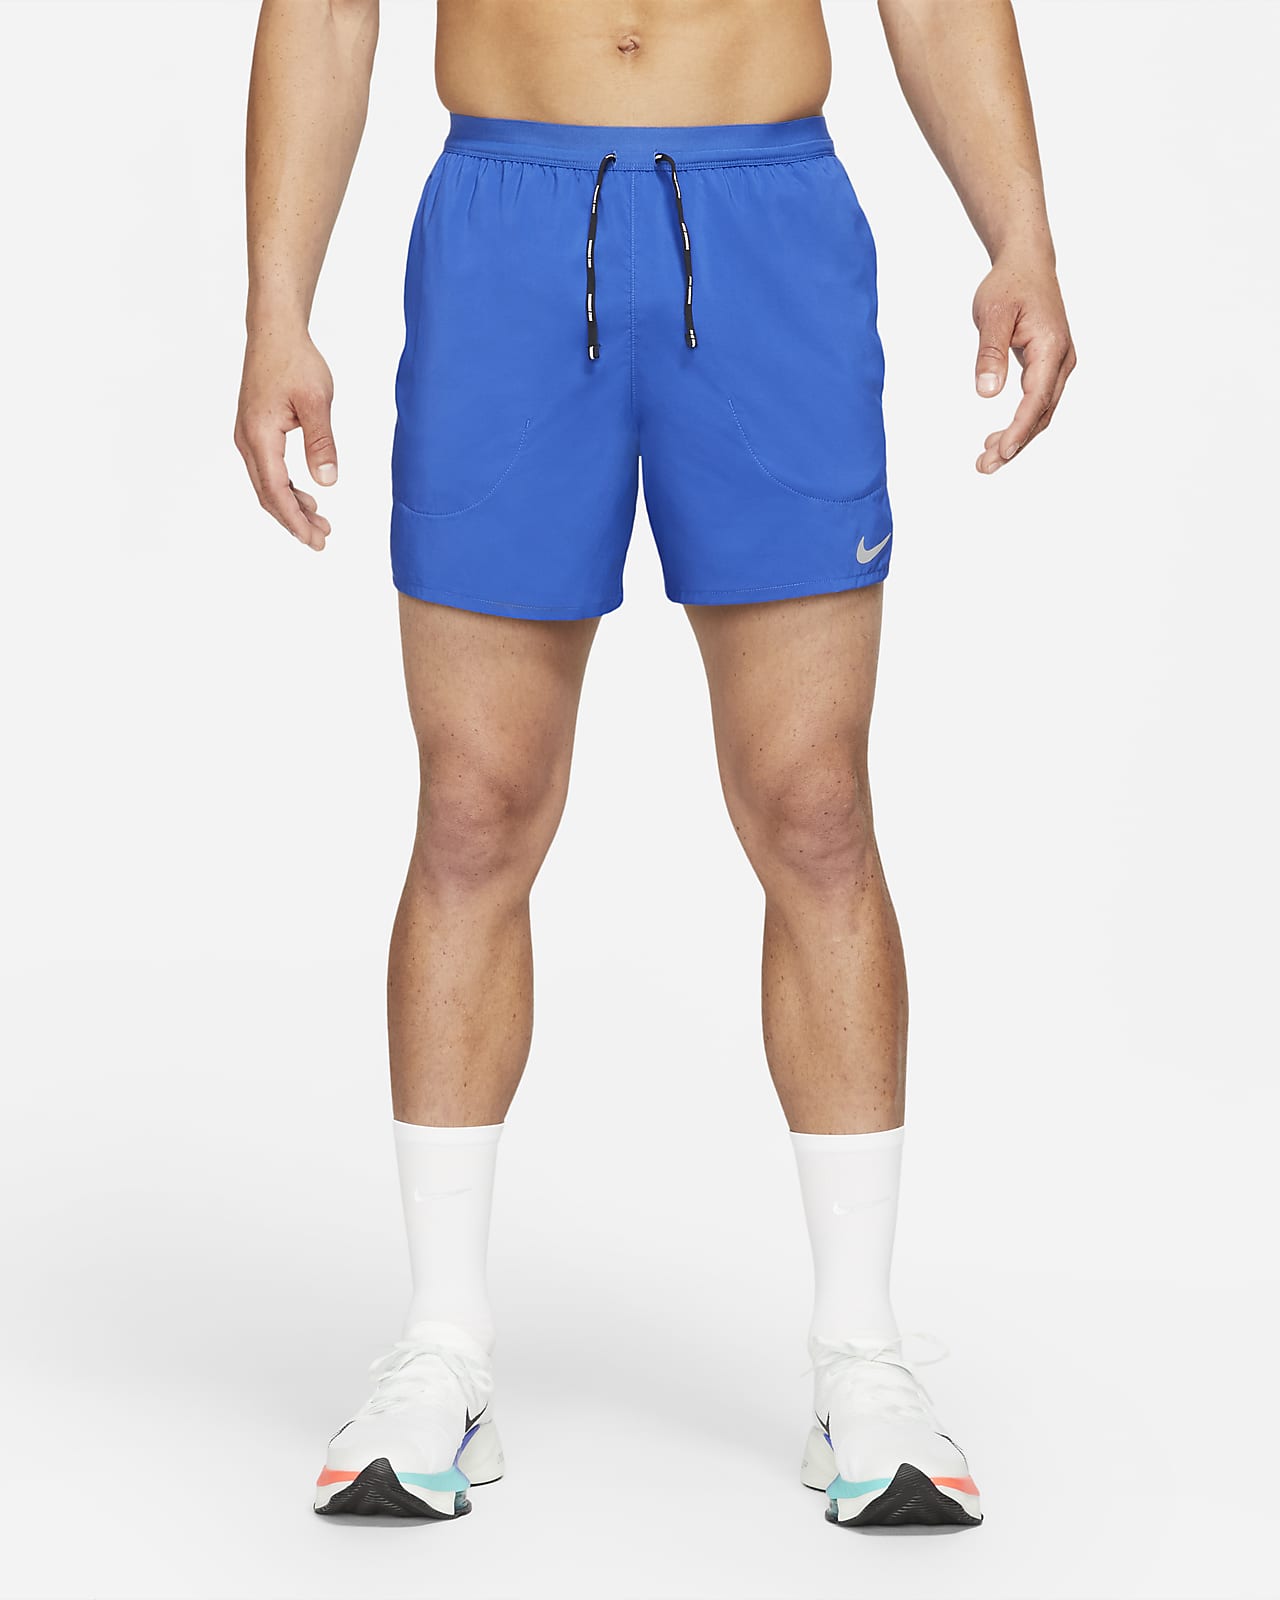 Nike Flex Stride 13 cm-es férfi futórövidnadrág integrált alsónadrággal